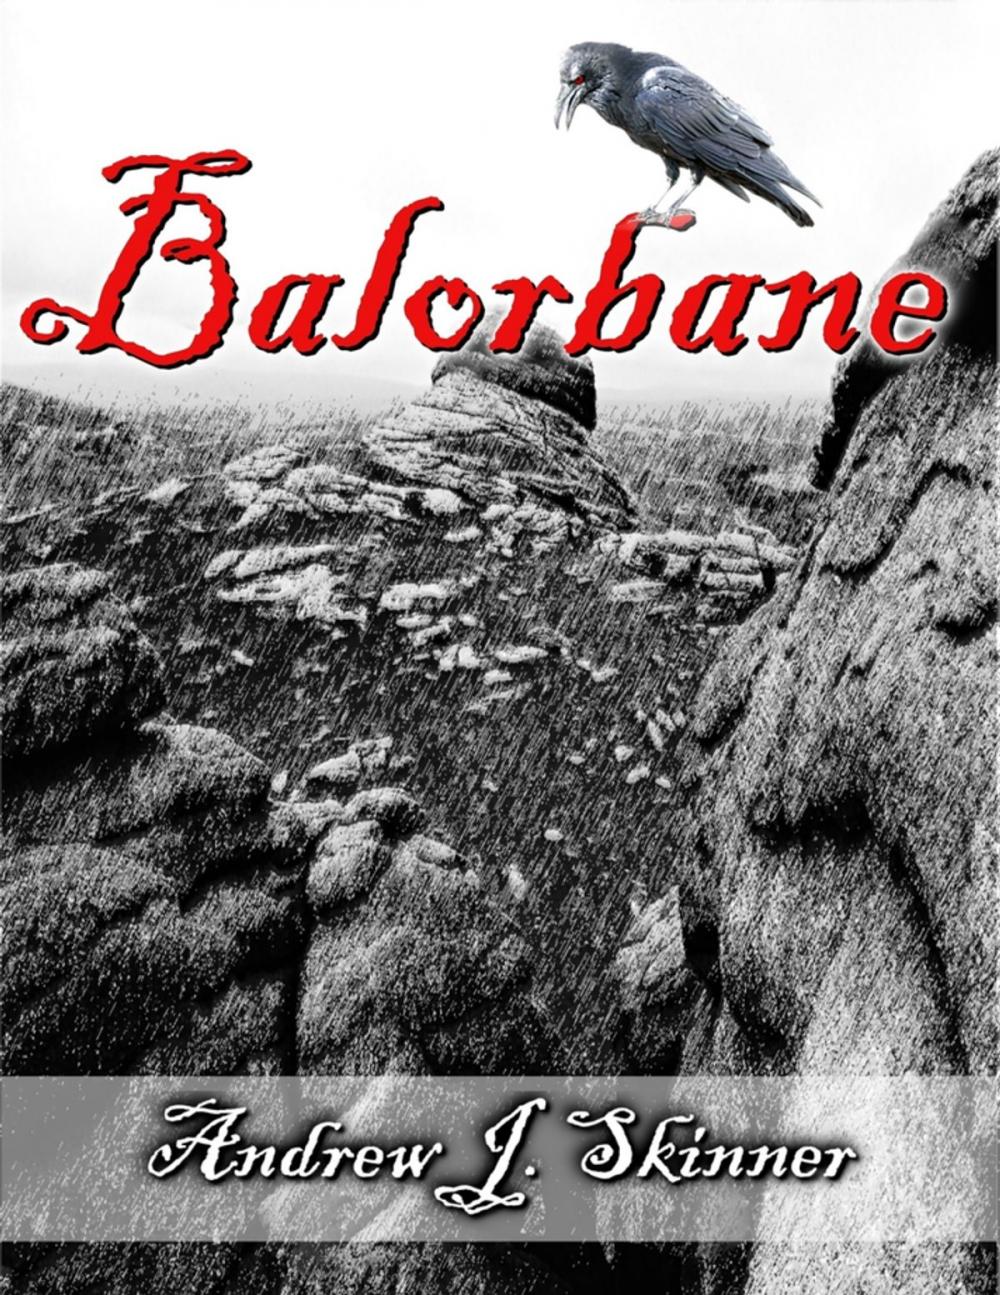 Big bigCover of Balorbane